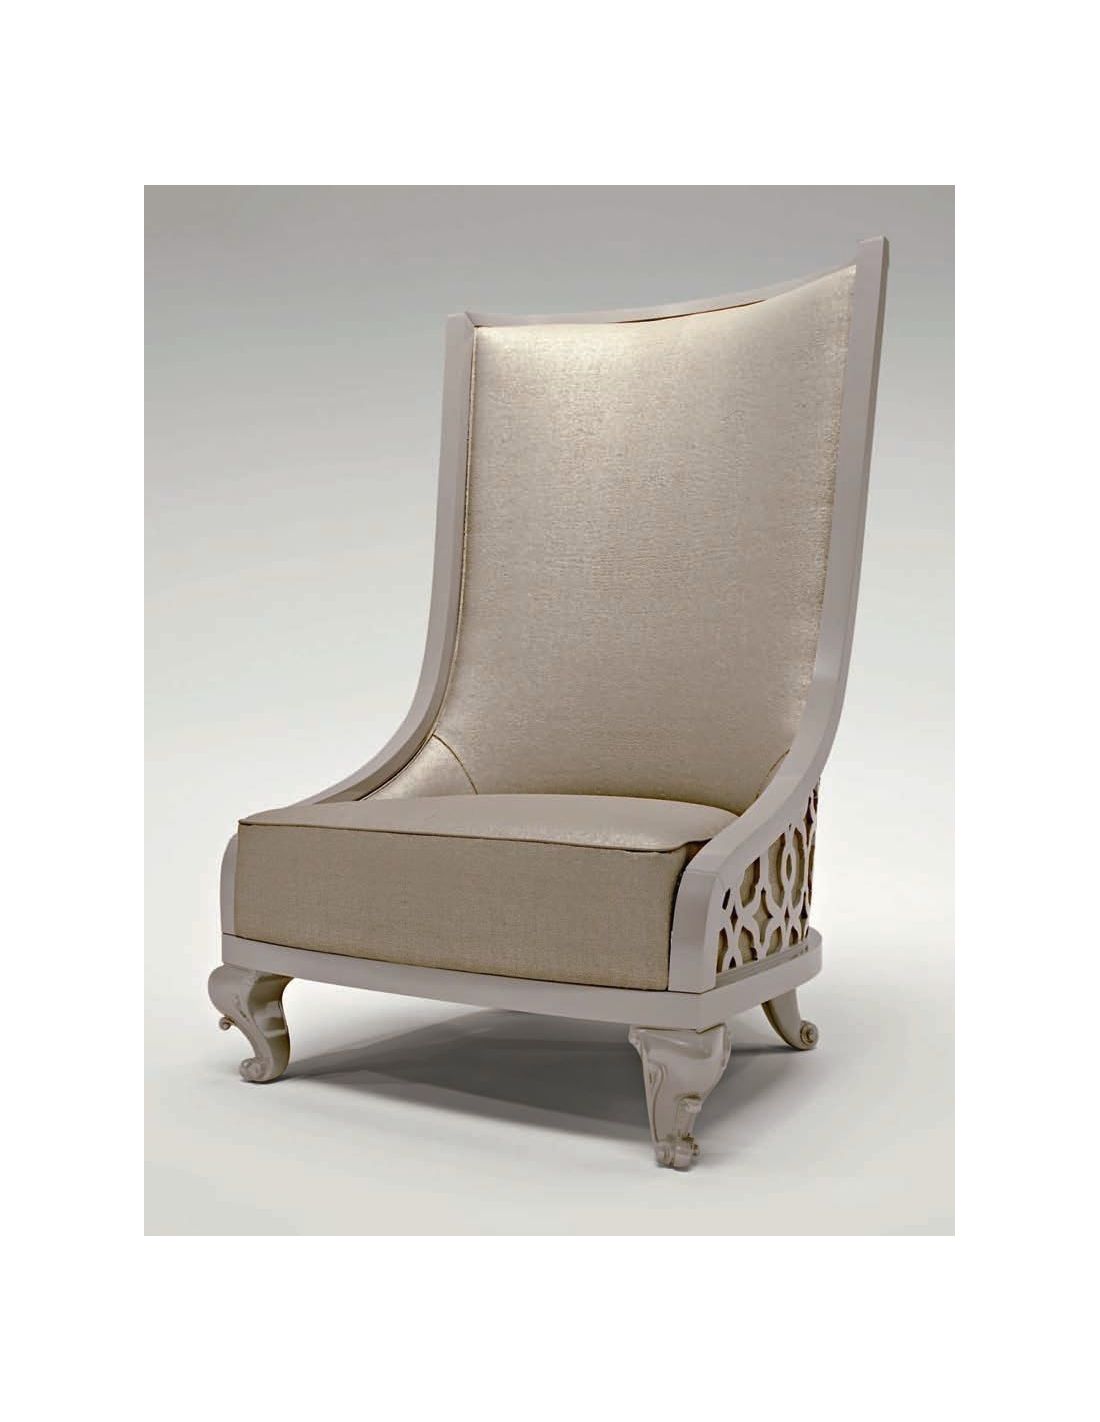 https://bernadettelivingston.com/13776-thickbox_default/sleek-modern-and-beautiful-tall-back-chairs.jpg